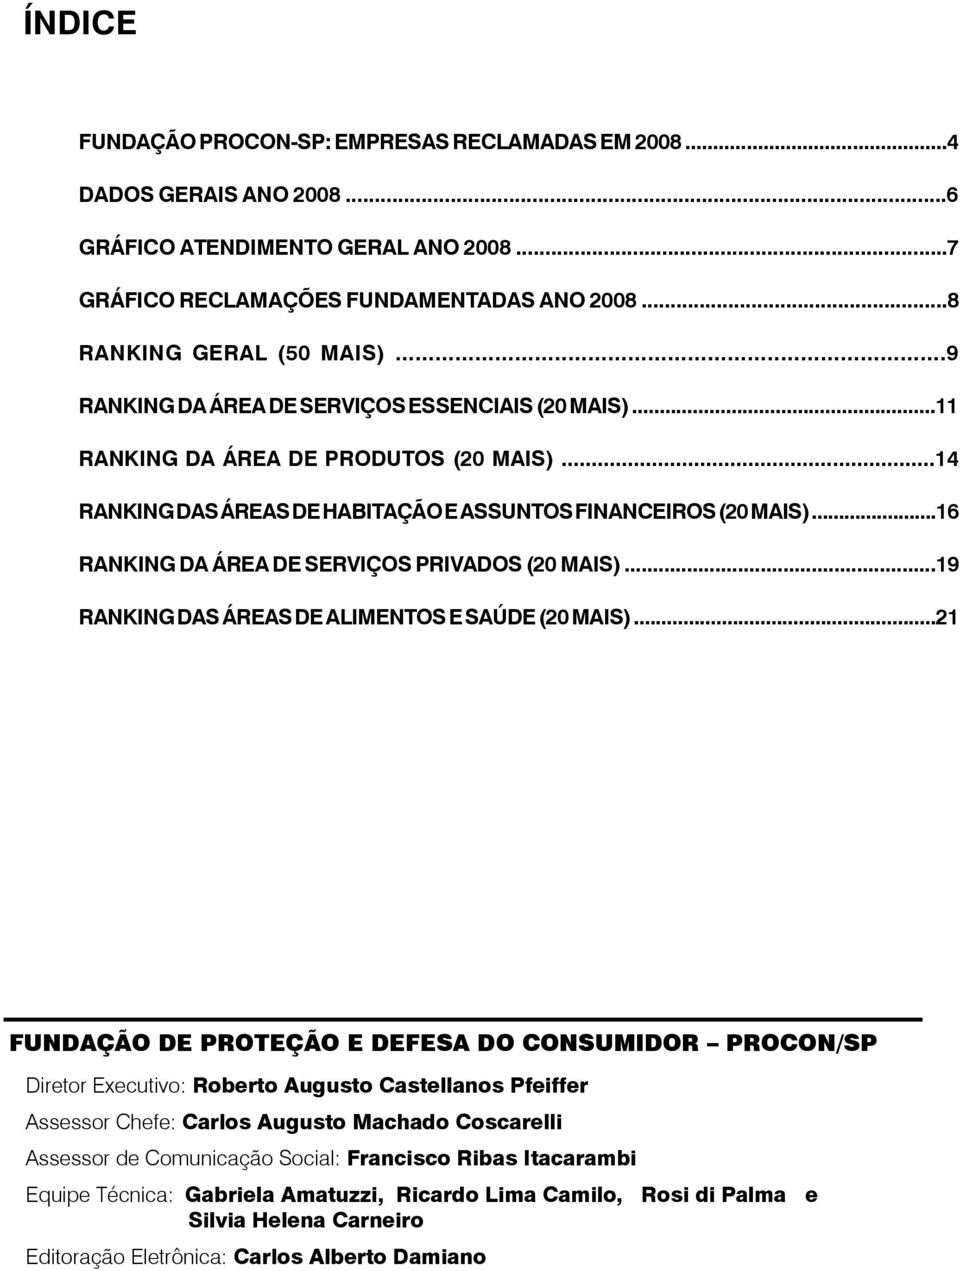 ..16 RANKING DA ÁREA DE SERVIÇOS PRIVADOS (20 MAIS)...19 RANKING DAS ÁREAS DE ALIMENTOS E SAÚDE (20 MAIS).